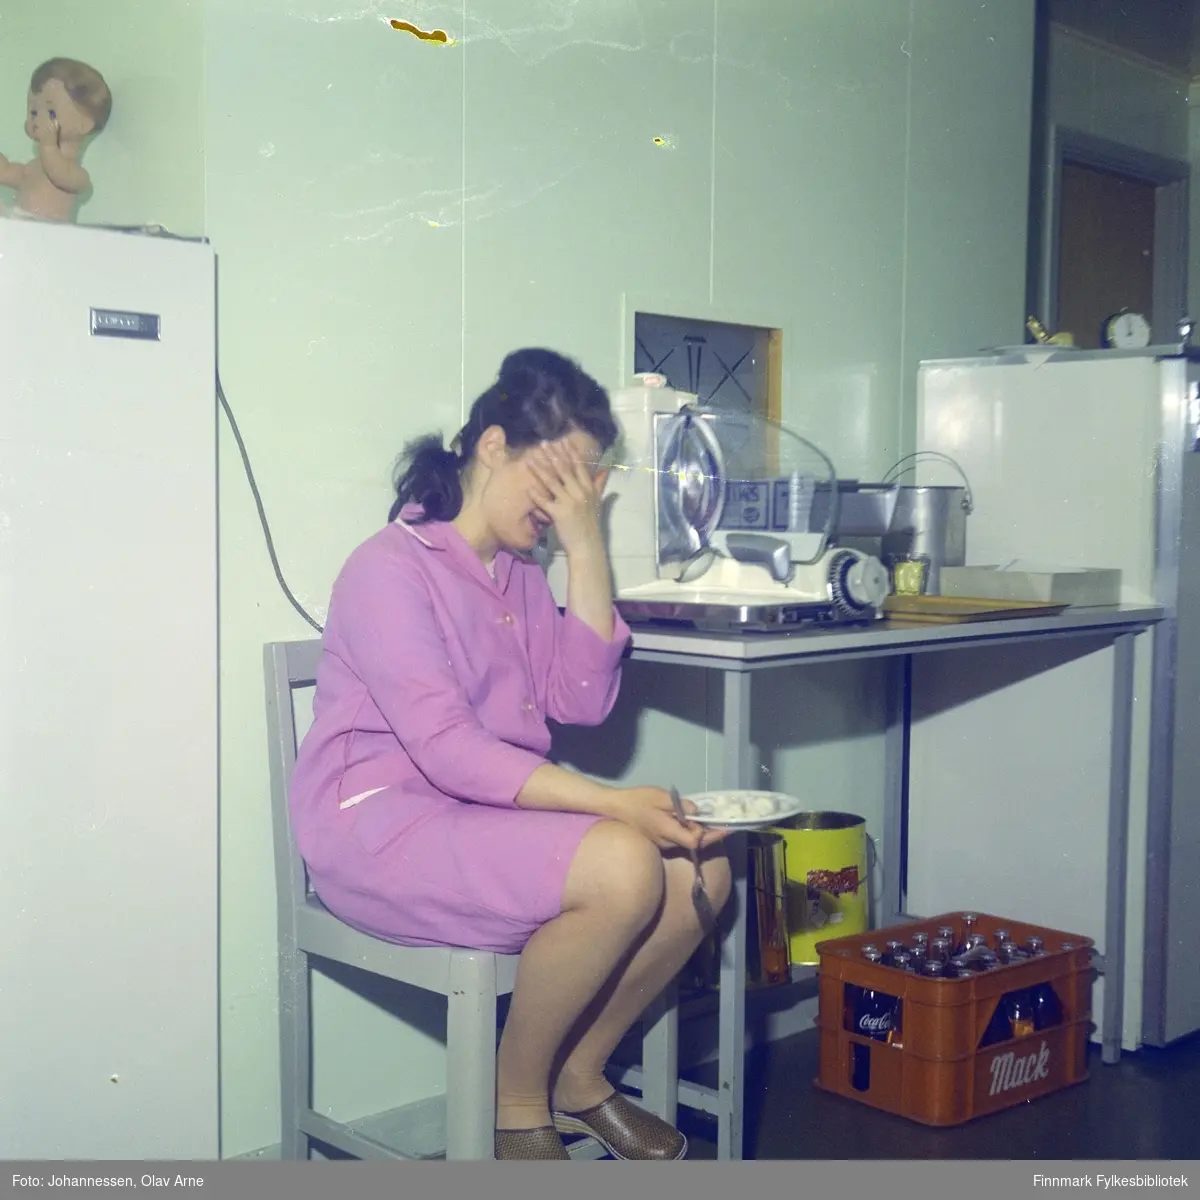 En ukjent kvinne spiser men hun sitter på en stol i et kjøkken, antagelig på Skansen i Båtsfjord

En kasse kan bli sett til høyresom inneholder coca-cola flasker

Foto trolig tatt på 1960-tallet